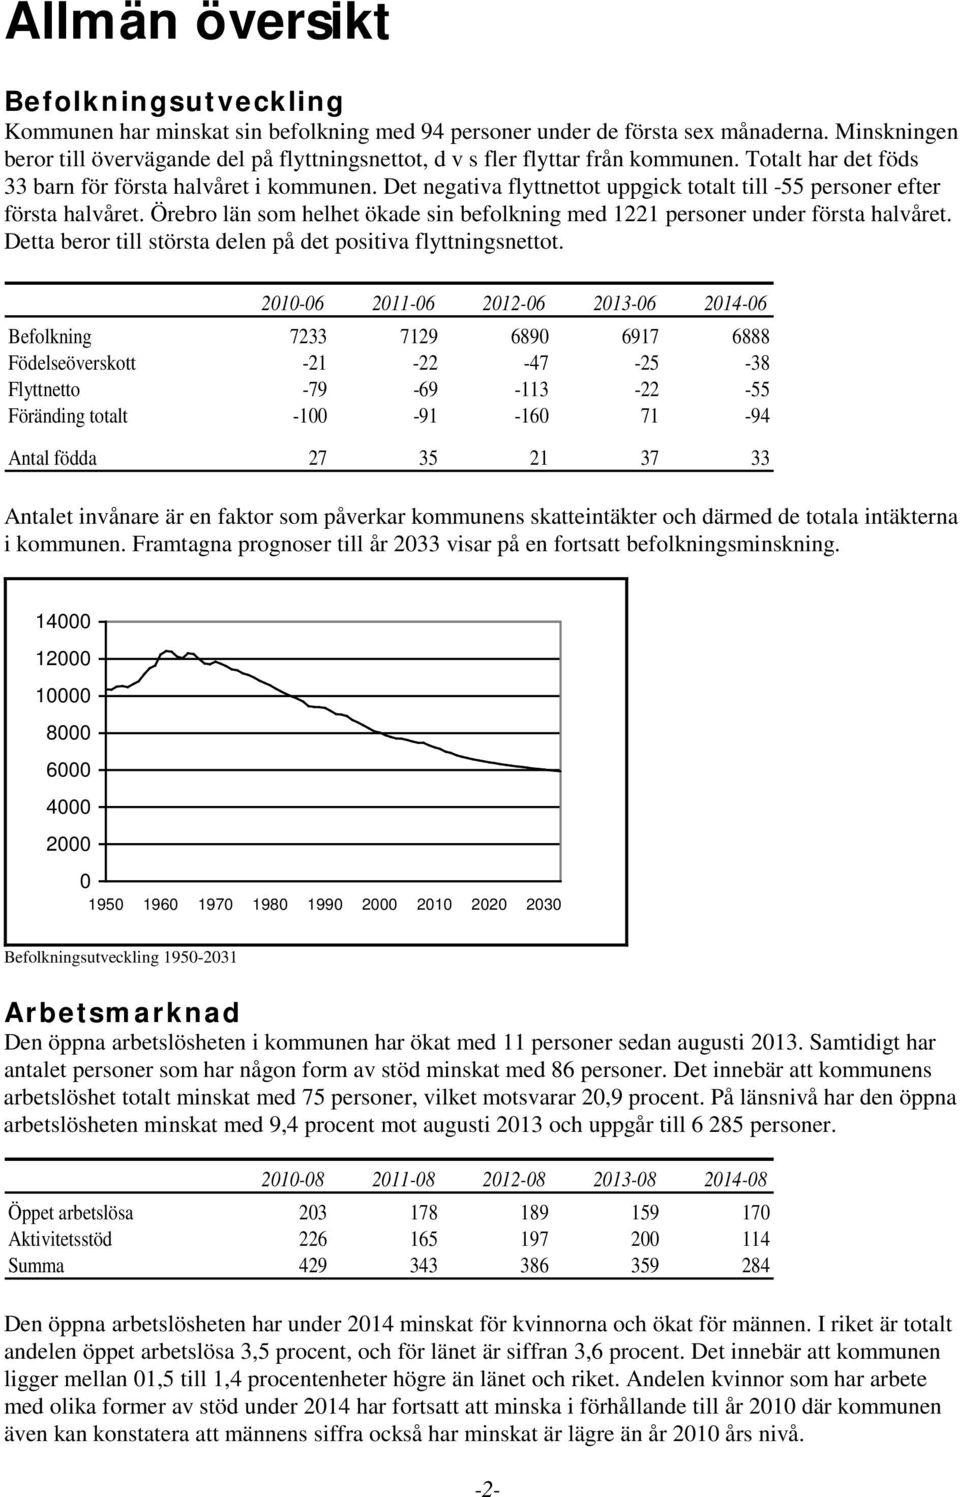 Det negativa flyttnettot uppgick totalt till -55 personer efter första halvåret. Örebro län som helhet ökade sin befolkning med 1221 personer under första halvåret.